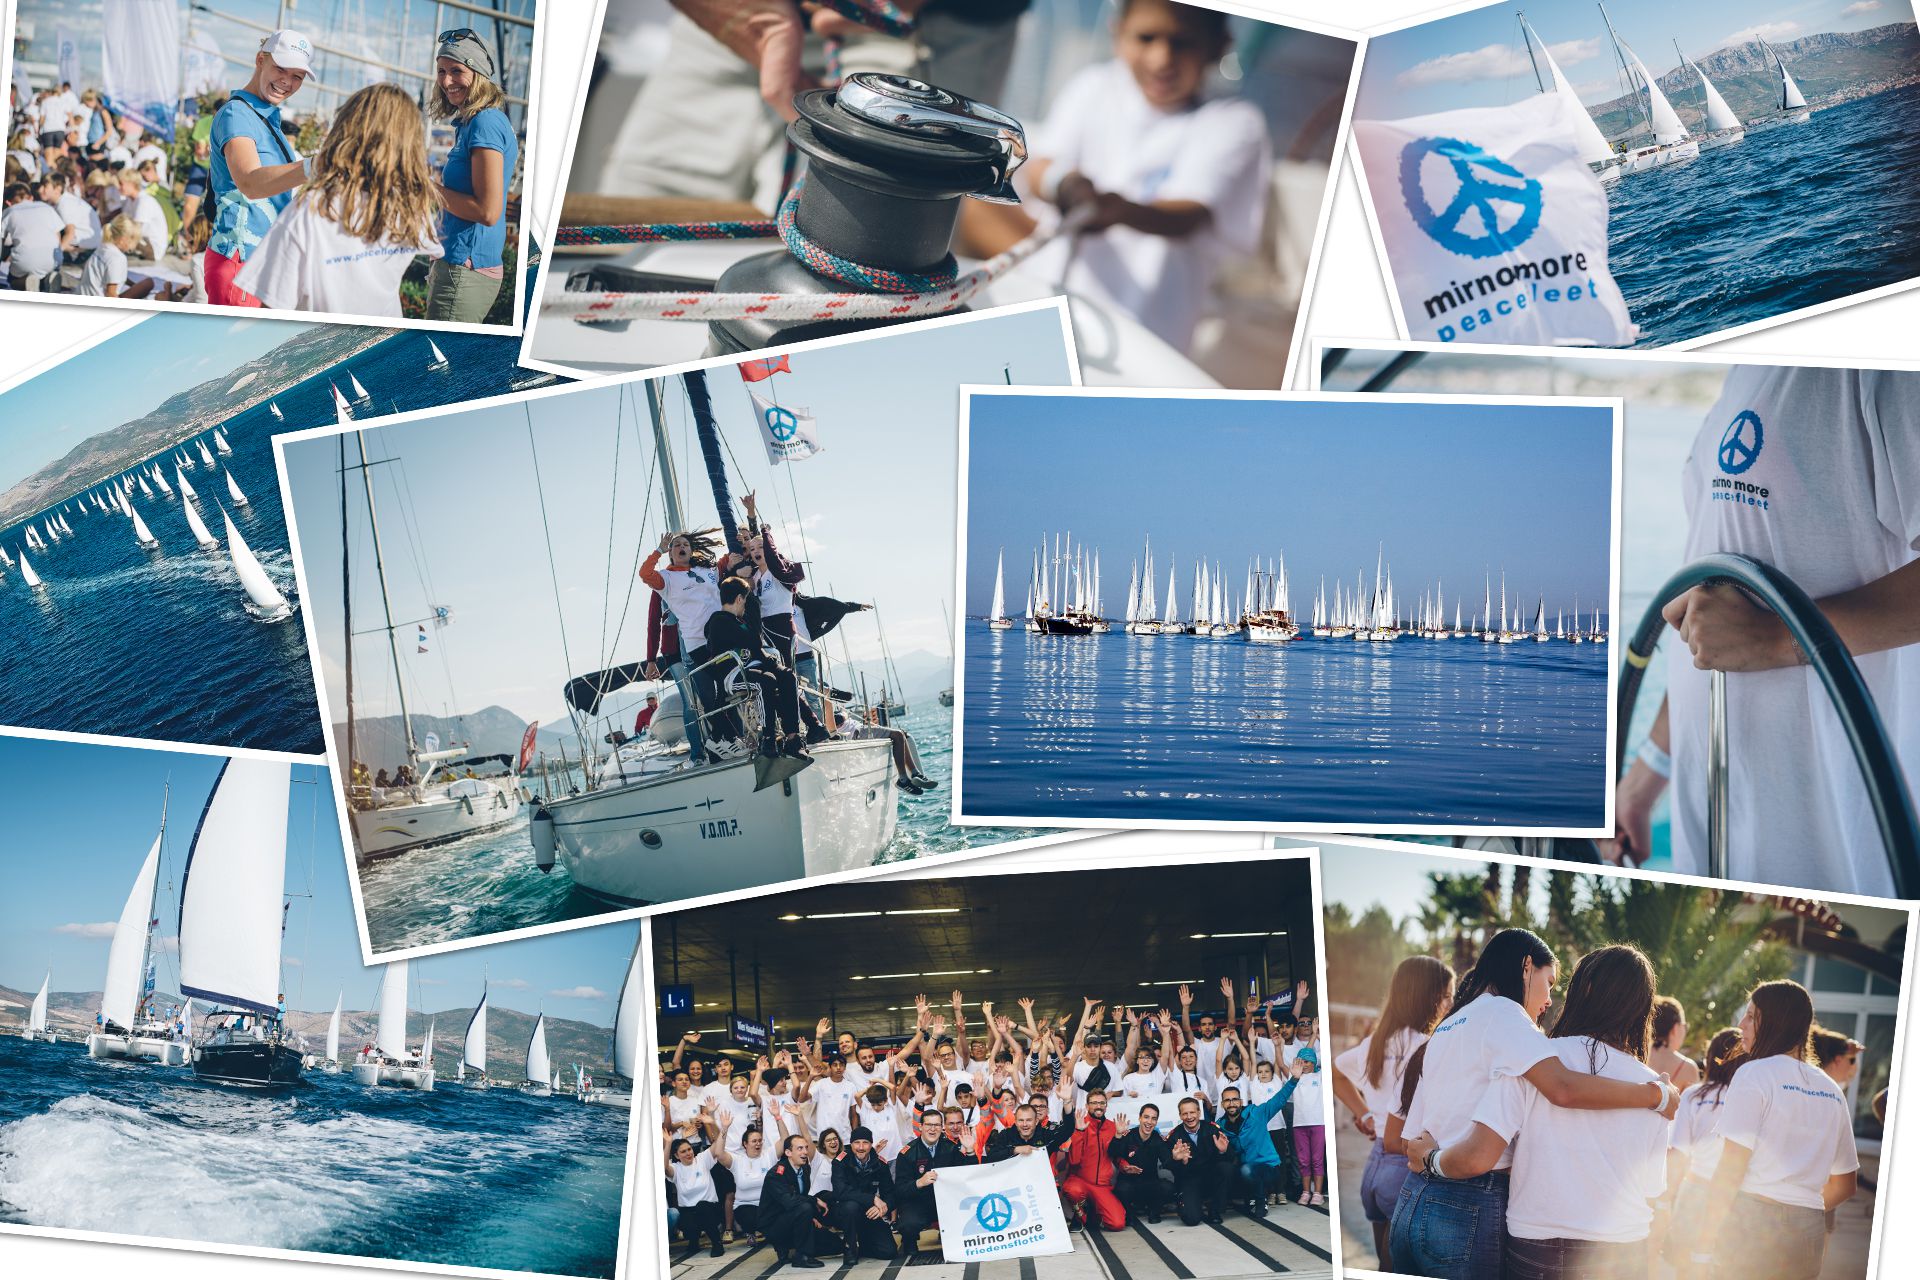 mirno more, peacefleet, sailing week, sailing, sailing holiday, charity, sailing for the good cause